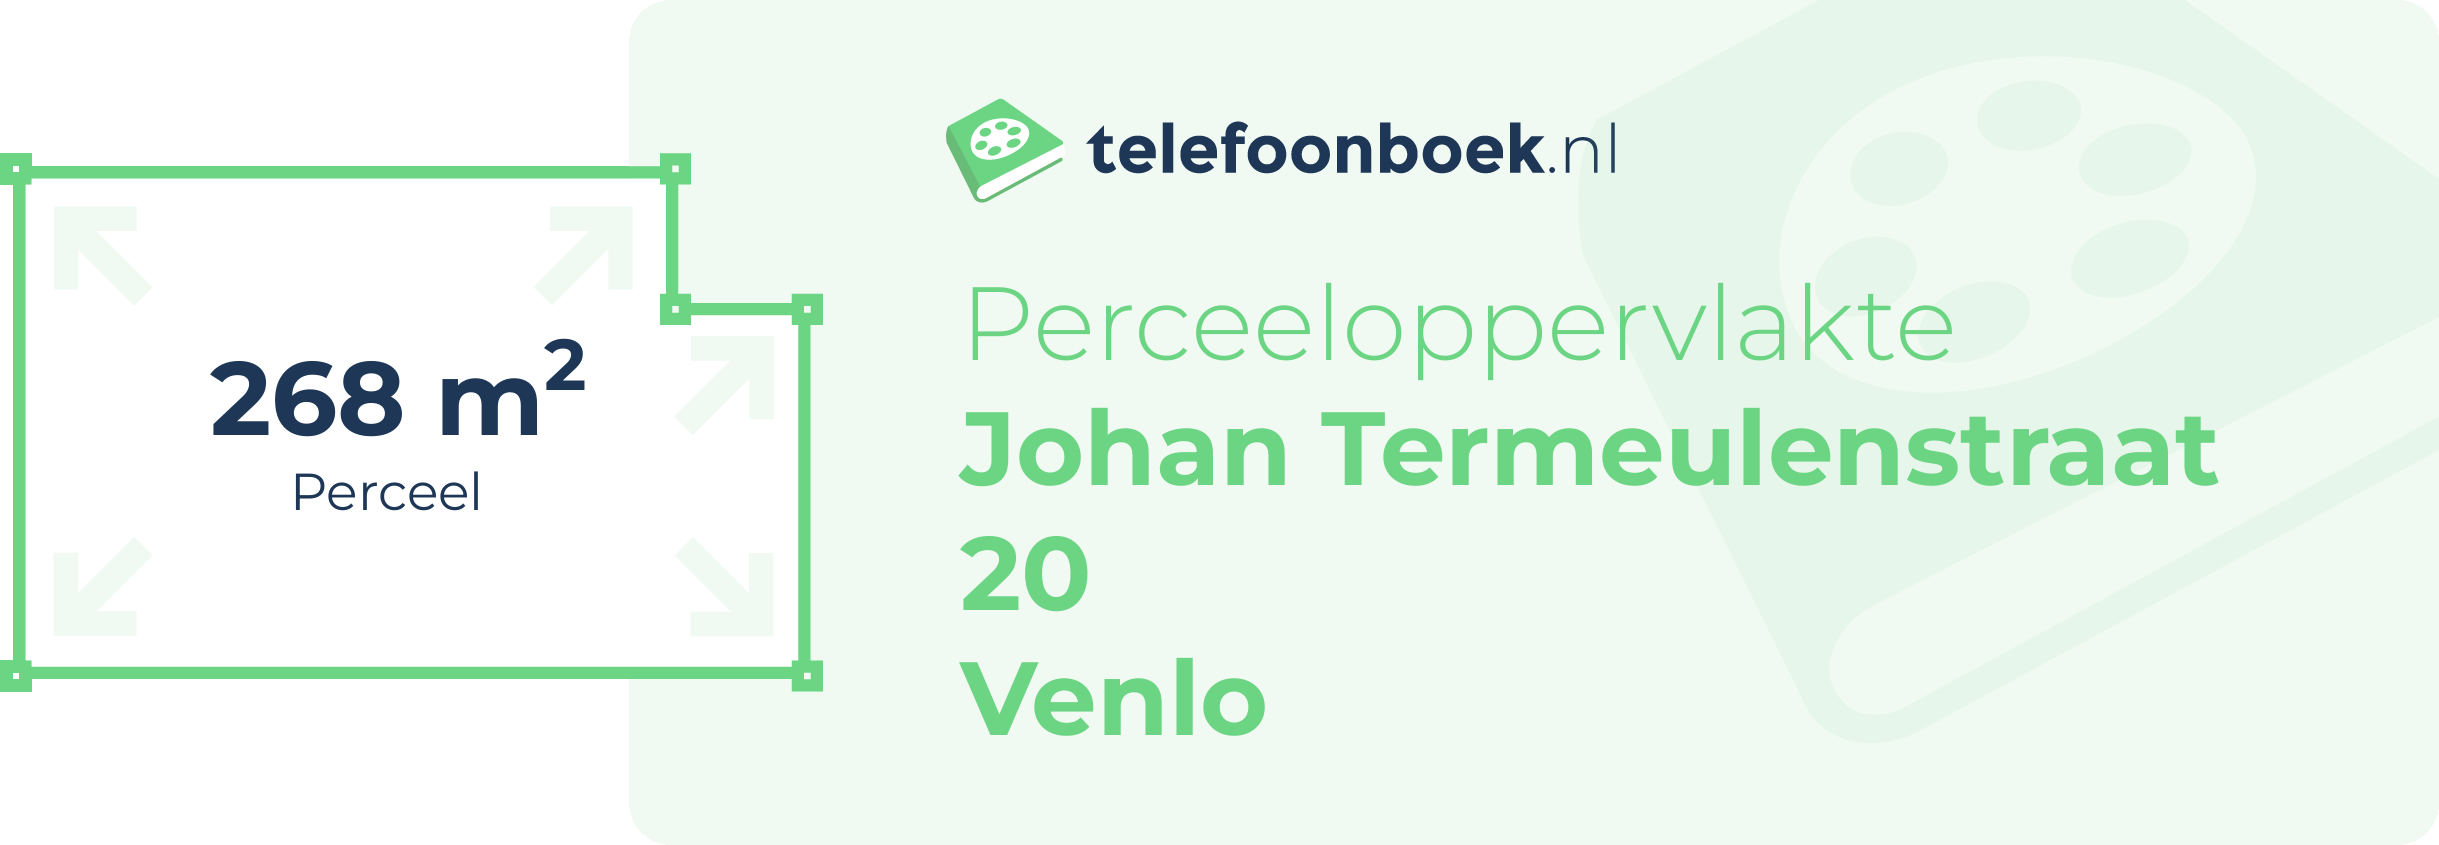 Perceeloppervlakte Johan Termeulenstraat 20 Venlo